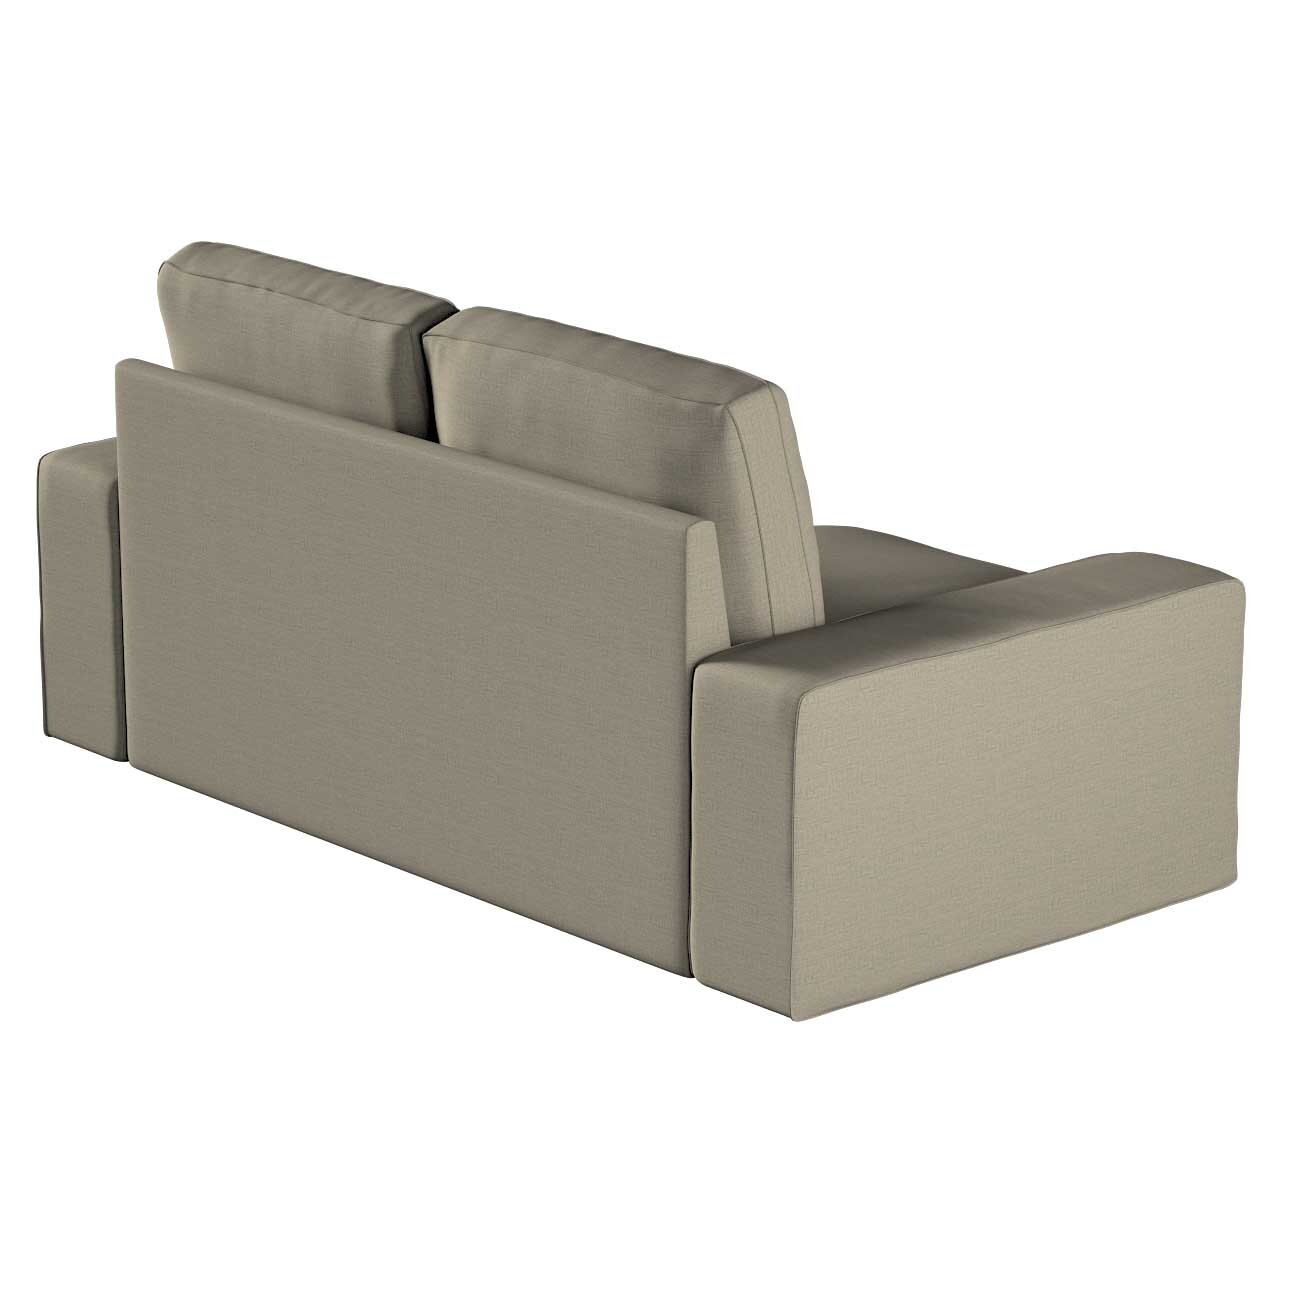 Bezug für Kivik 2-Sitzer Sofa, grau-braun, Bezug für Sofa Kivik 2-Sitzer, L günstig online kaufen